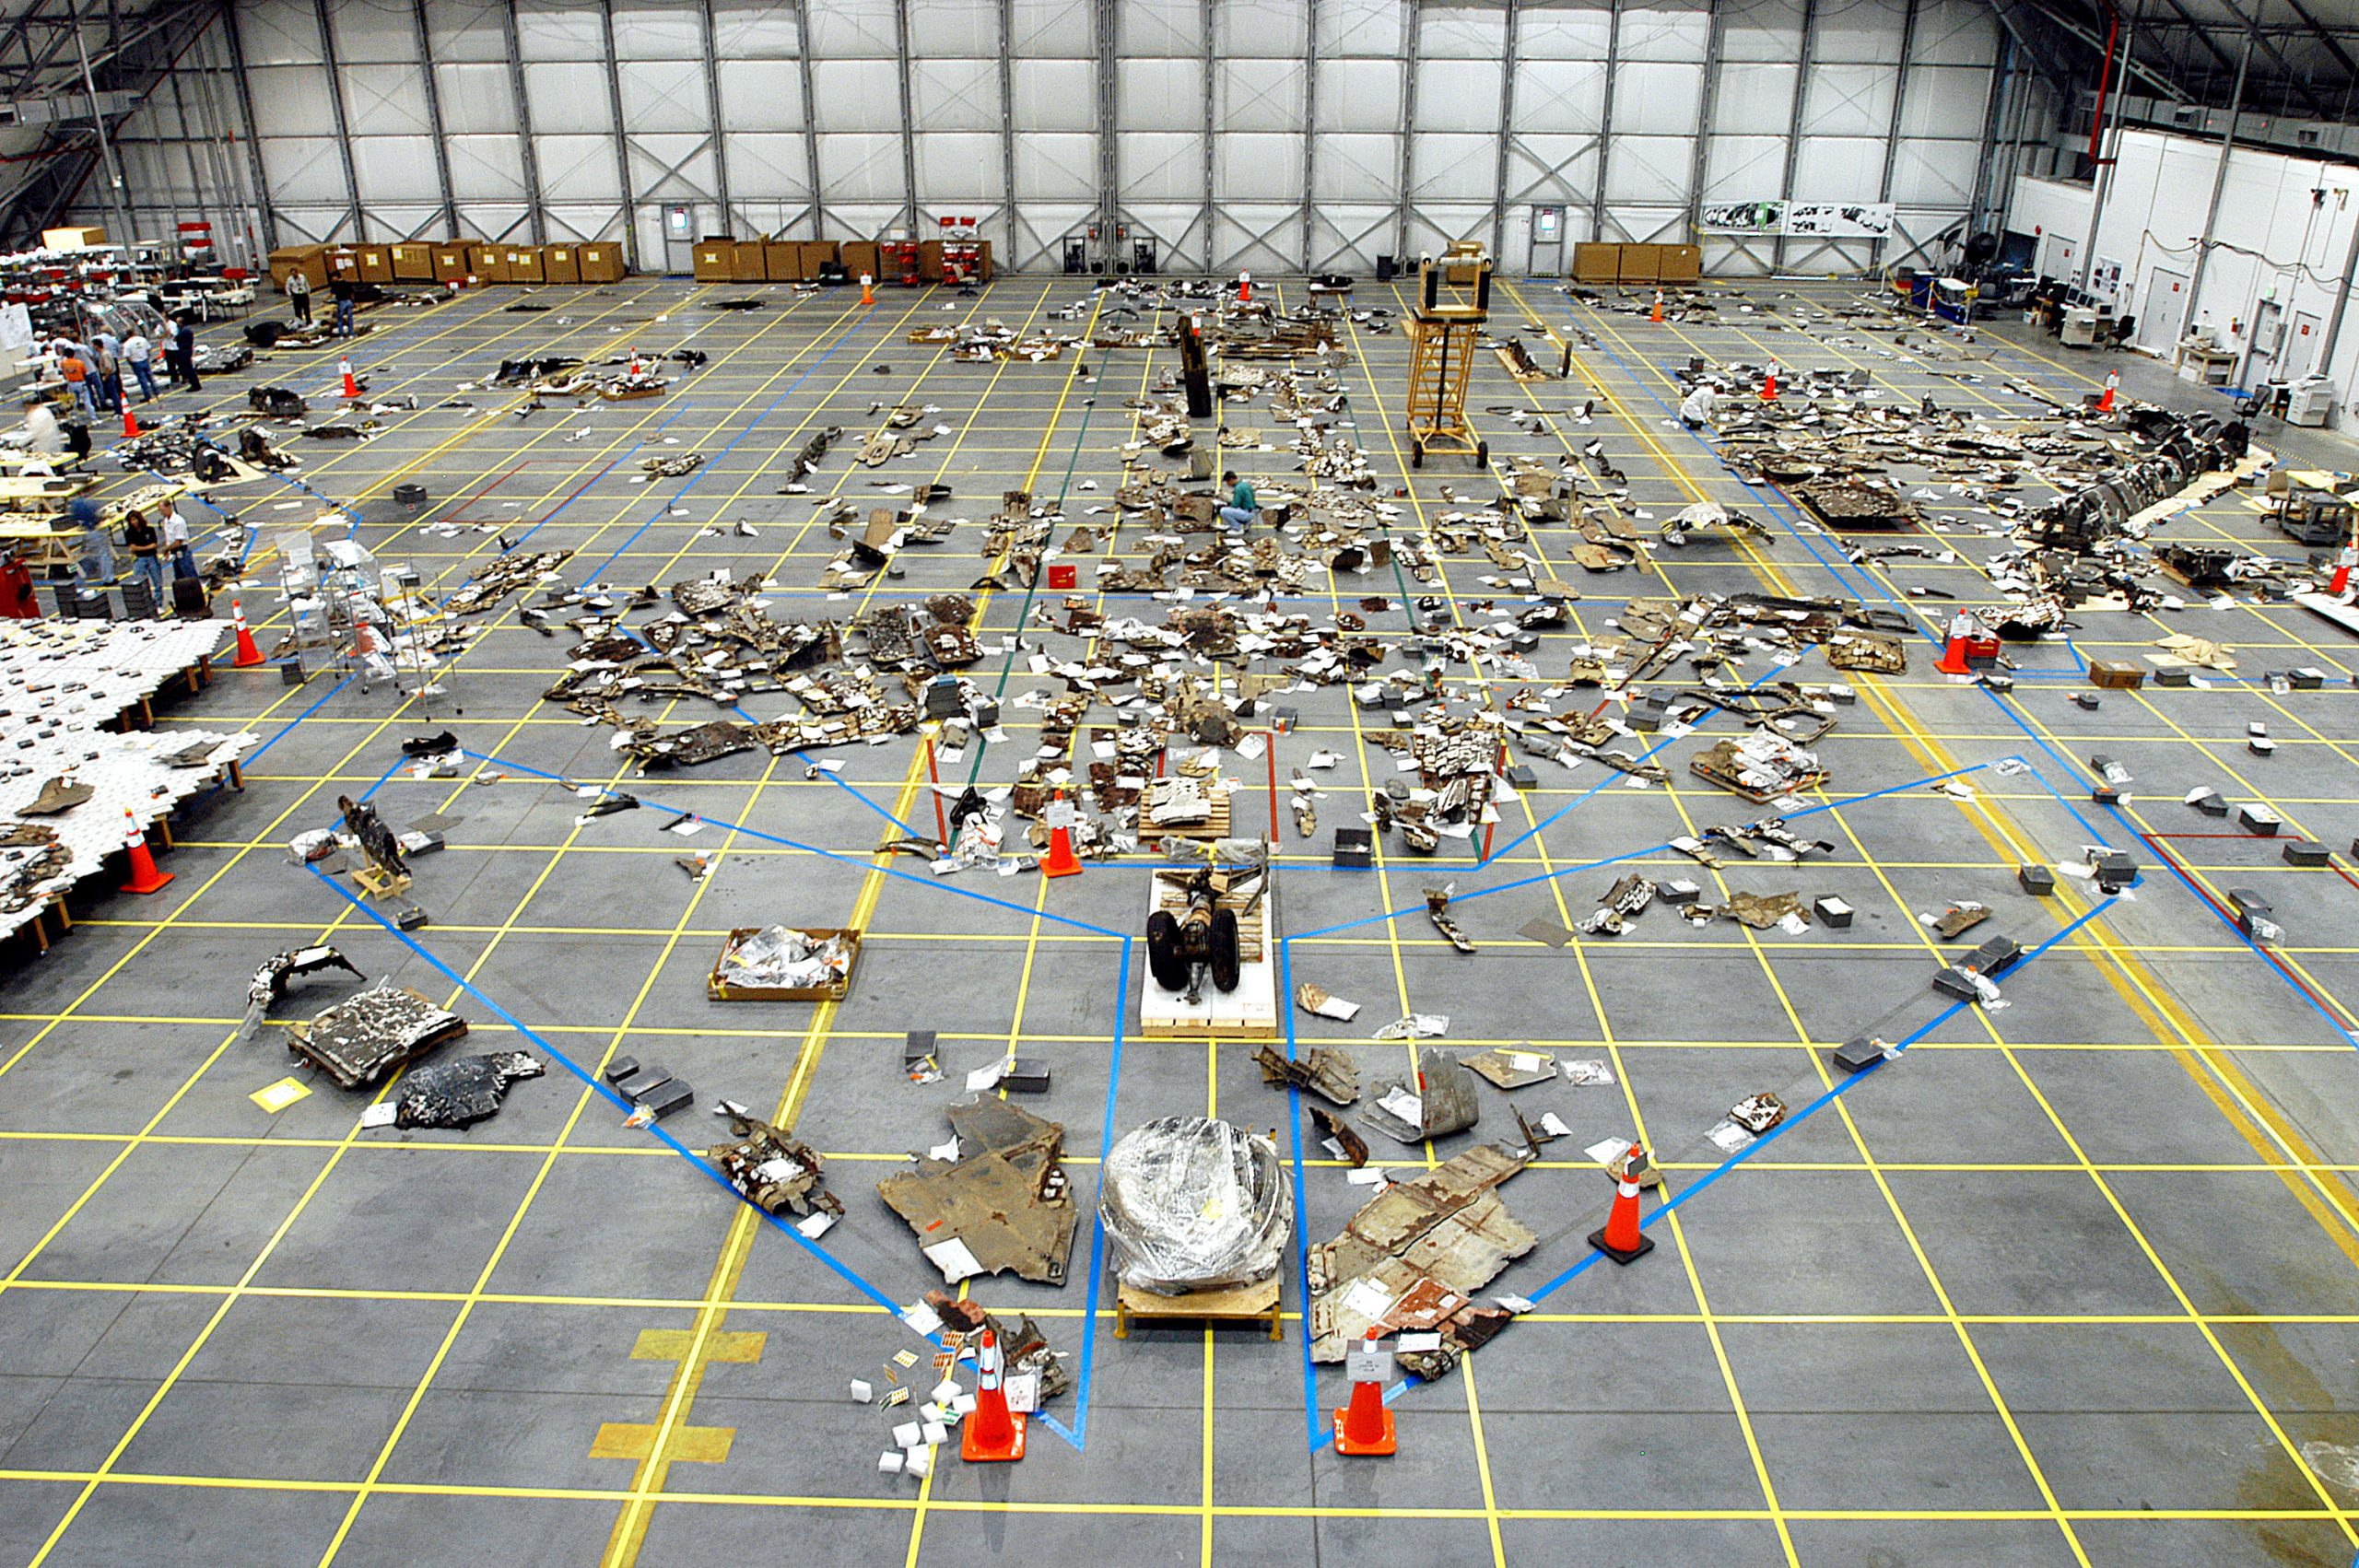  أجزاء من حطام مكوك الفضاء كولومبيا مخزنة في حظيرة في مركز كينيدي للفضاء التابع لناسا في فلوريدا خلال التحقيق في الحوادث